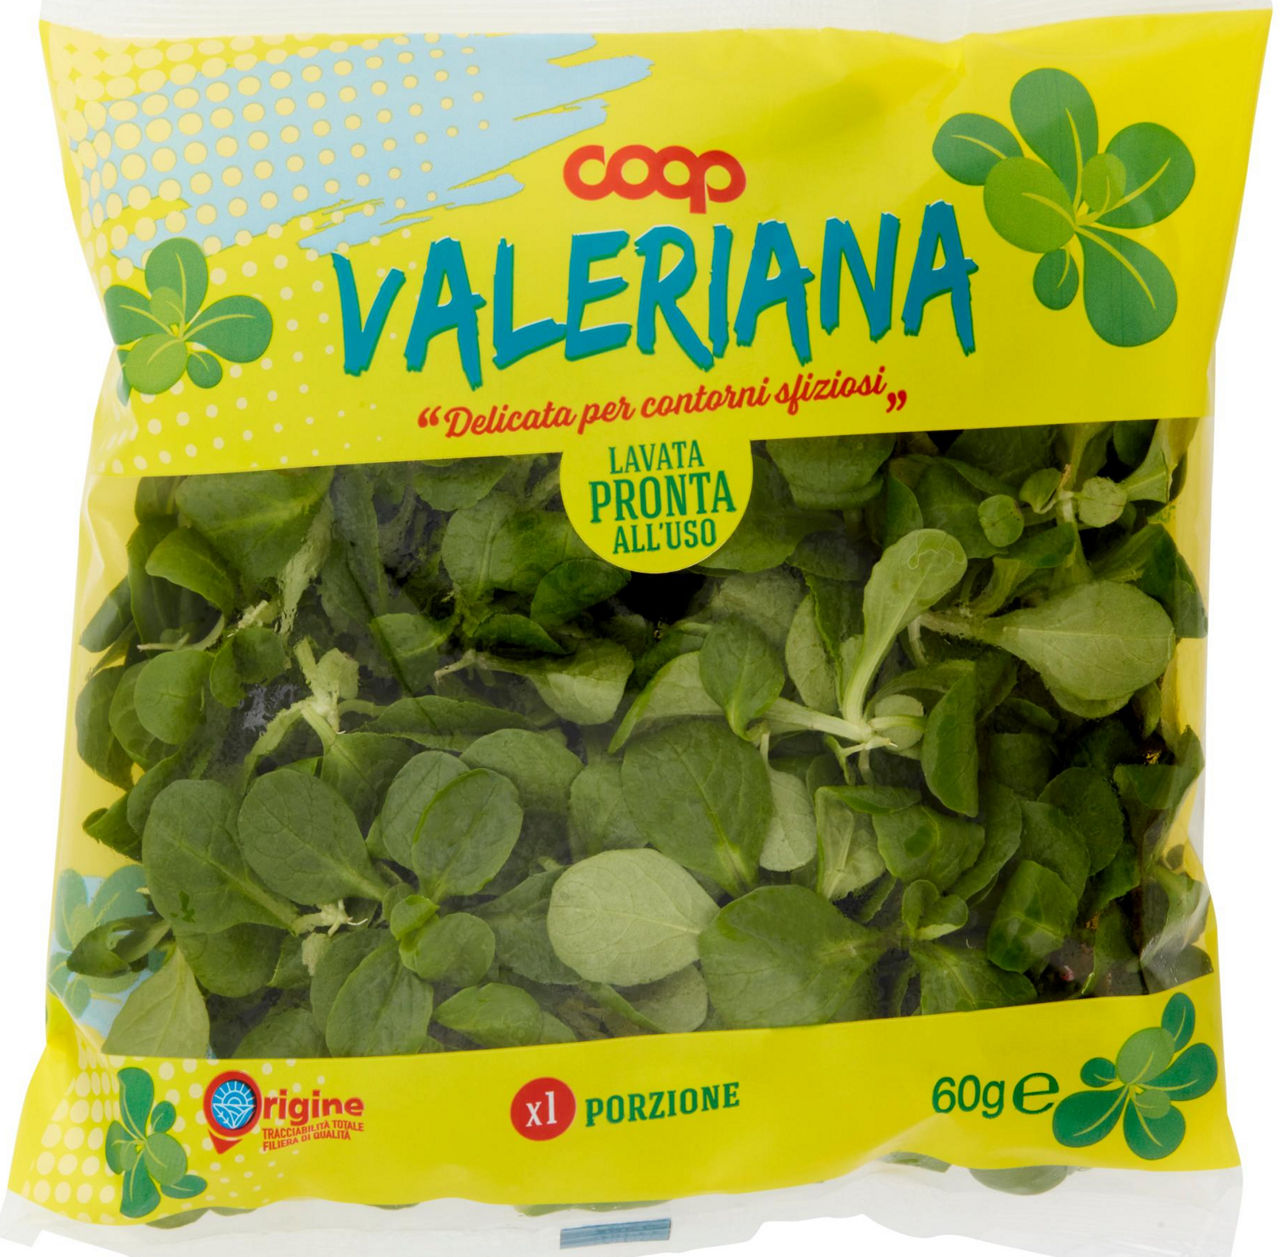 Valeriana coop origine it bs g 60